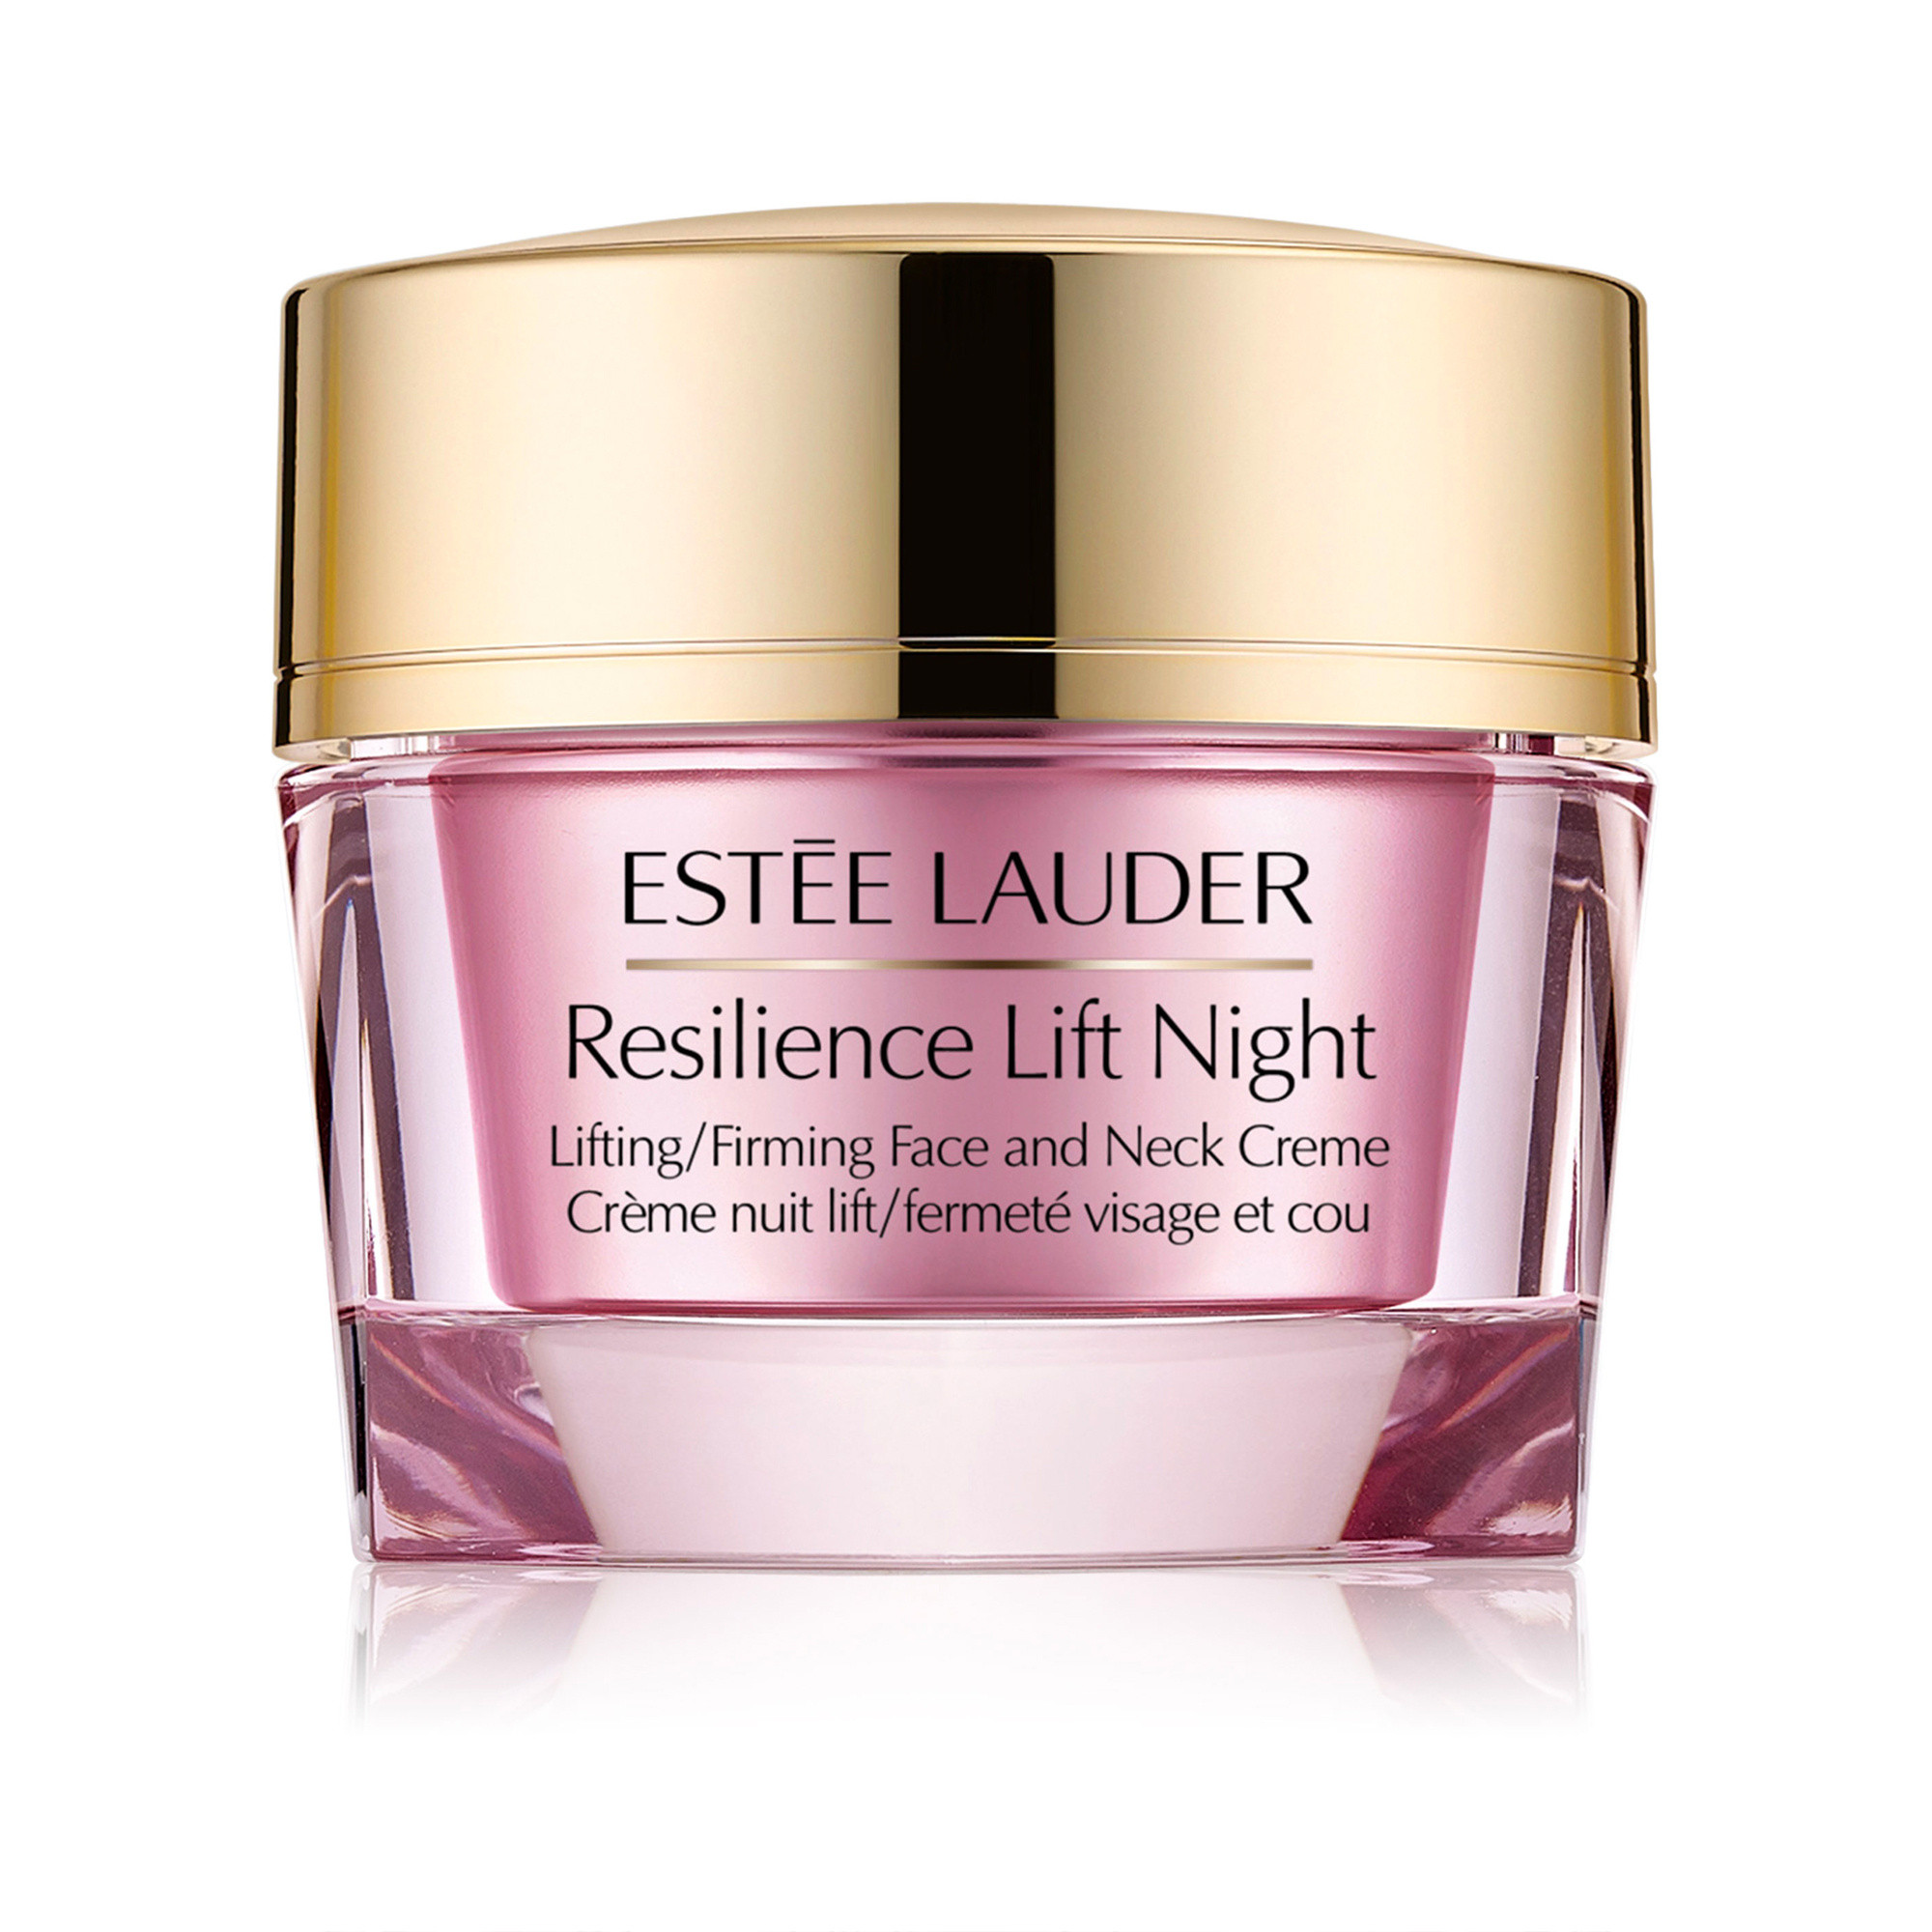 Estée Lauder - Resilience Lift Overnight, Pink, large image number 0